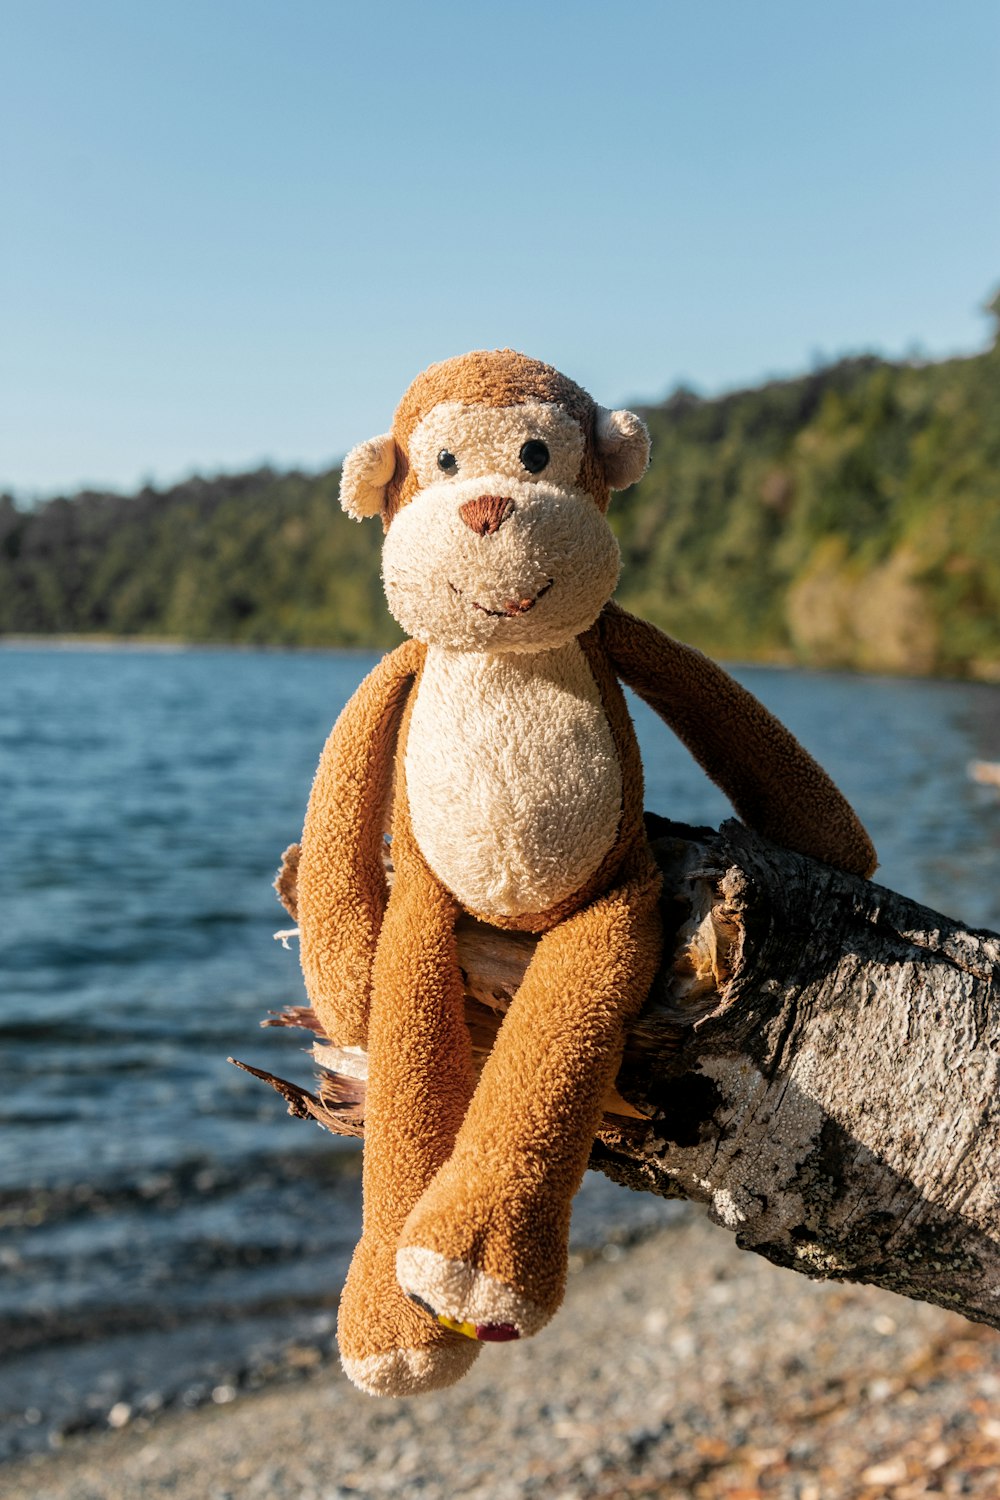 juguete de peluche de oso marrón y blanco en roca negra cerca del cuerpo de agua durante el día